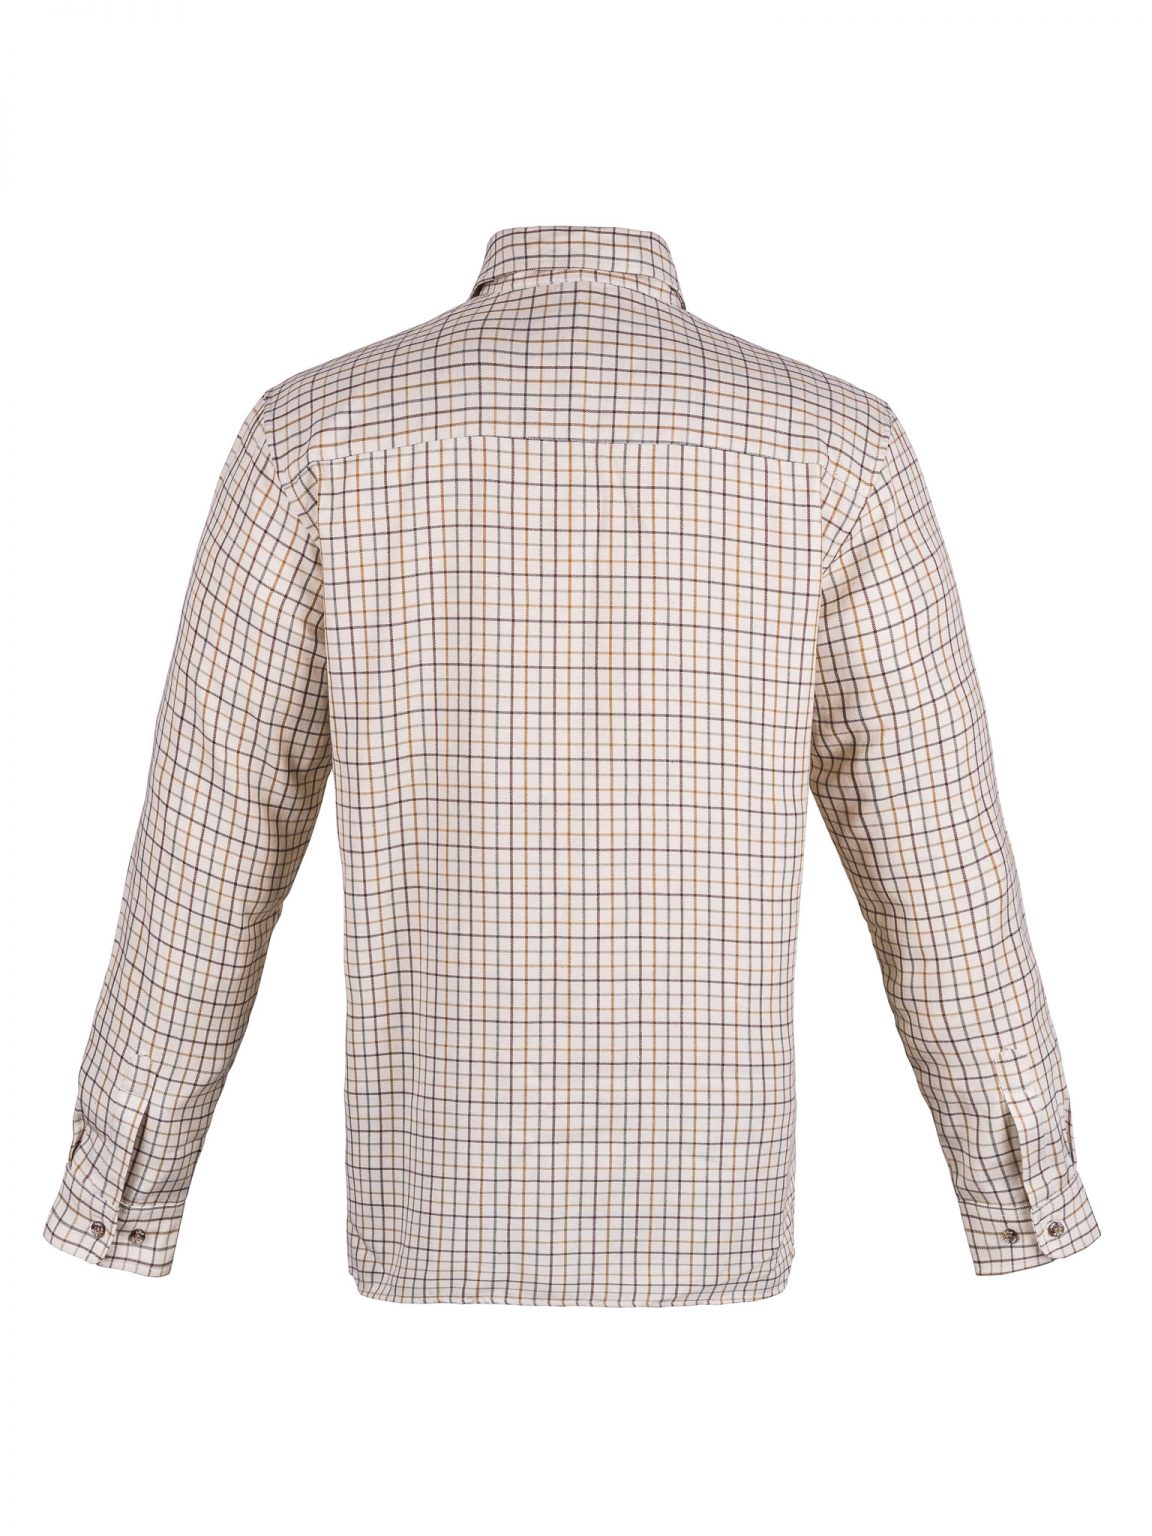 Edinburgh Outdoor Wear Men's Brodie Shirt - Brown - Edinburgh Outdoor Wear